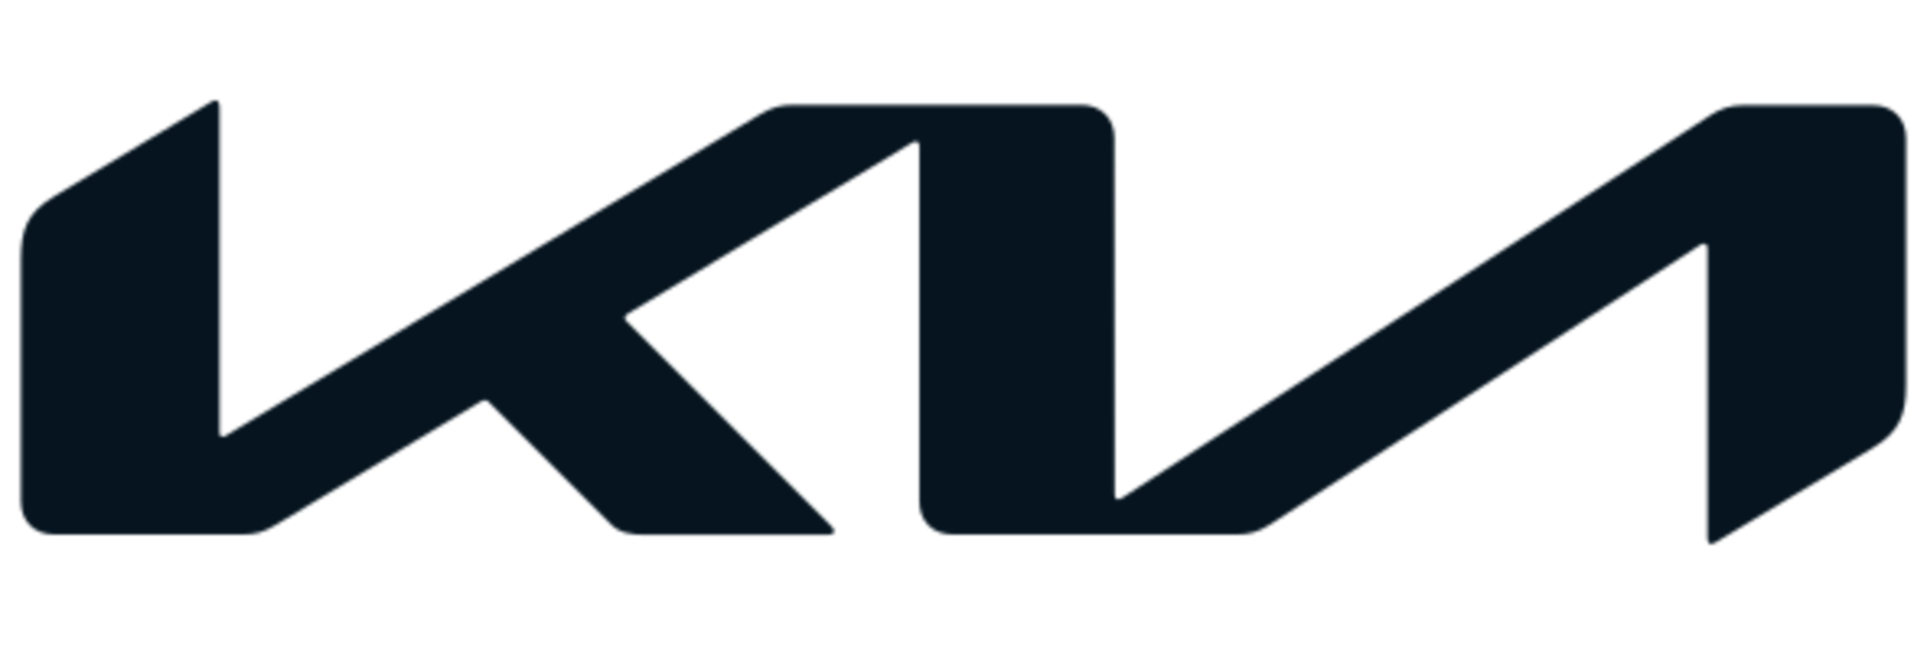 Логотип киа на черном фоне